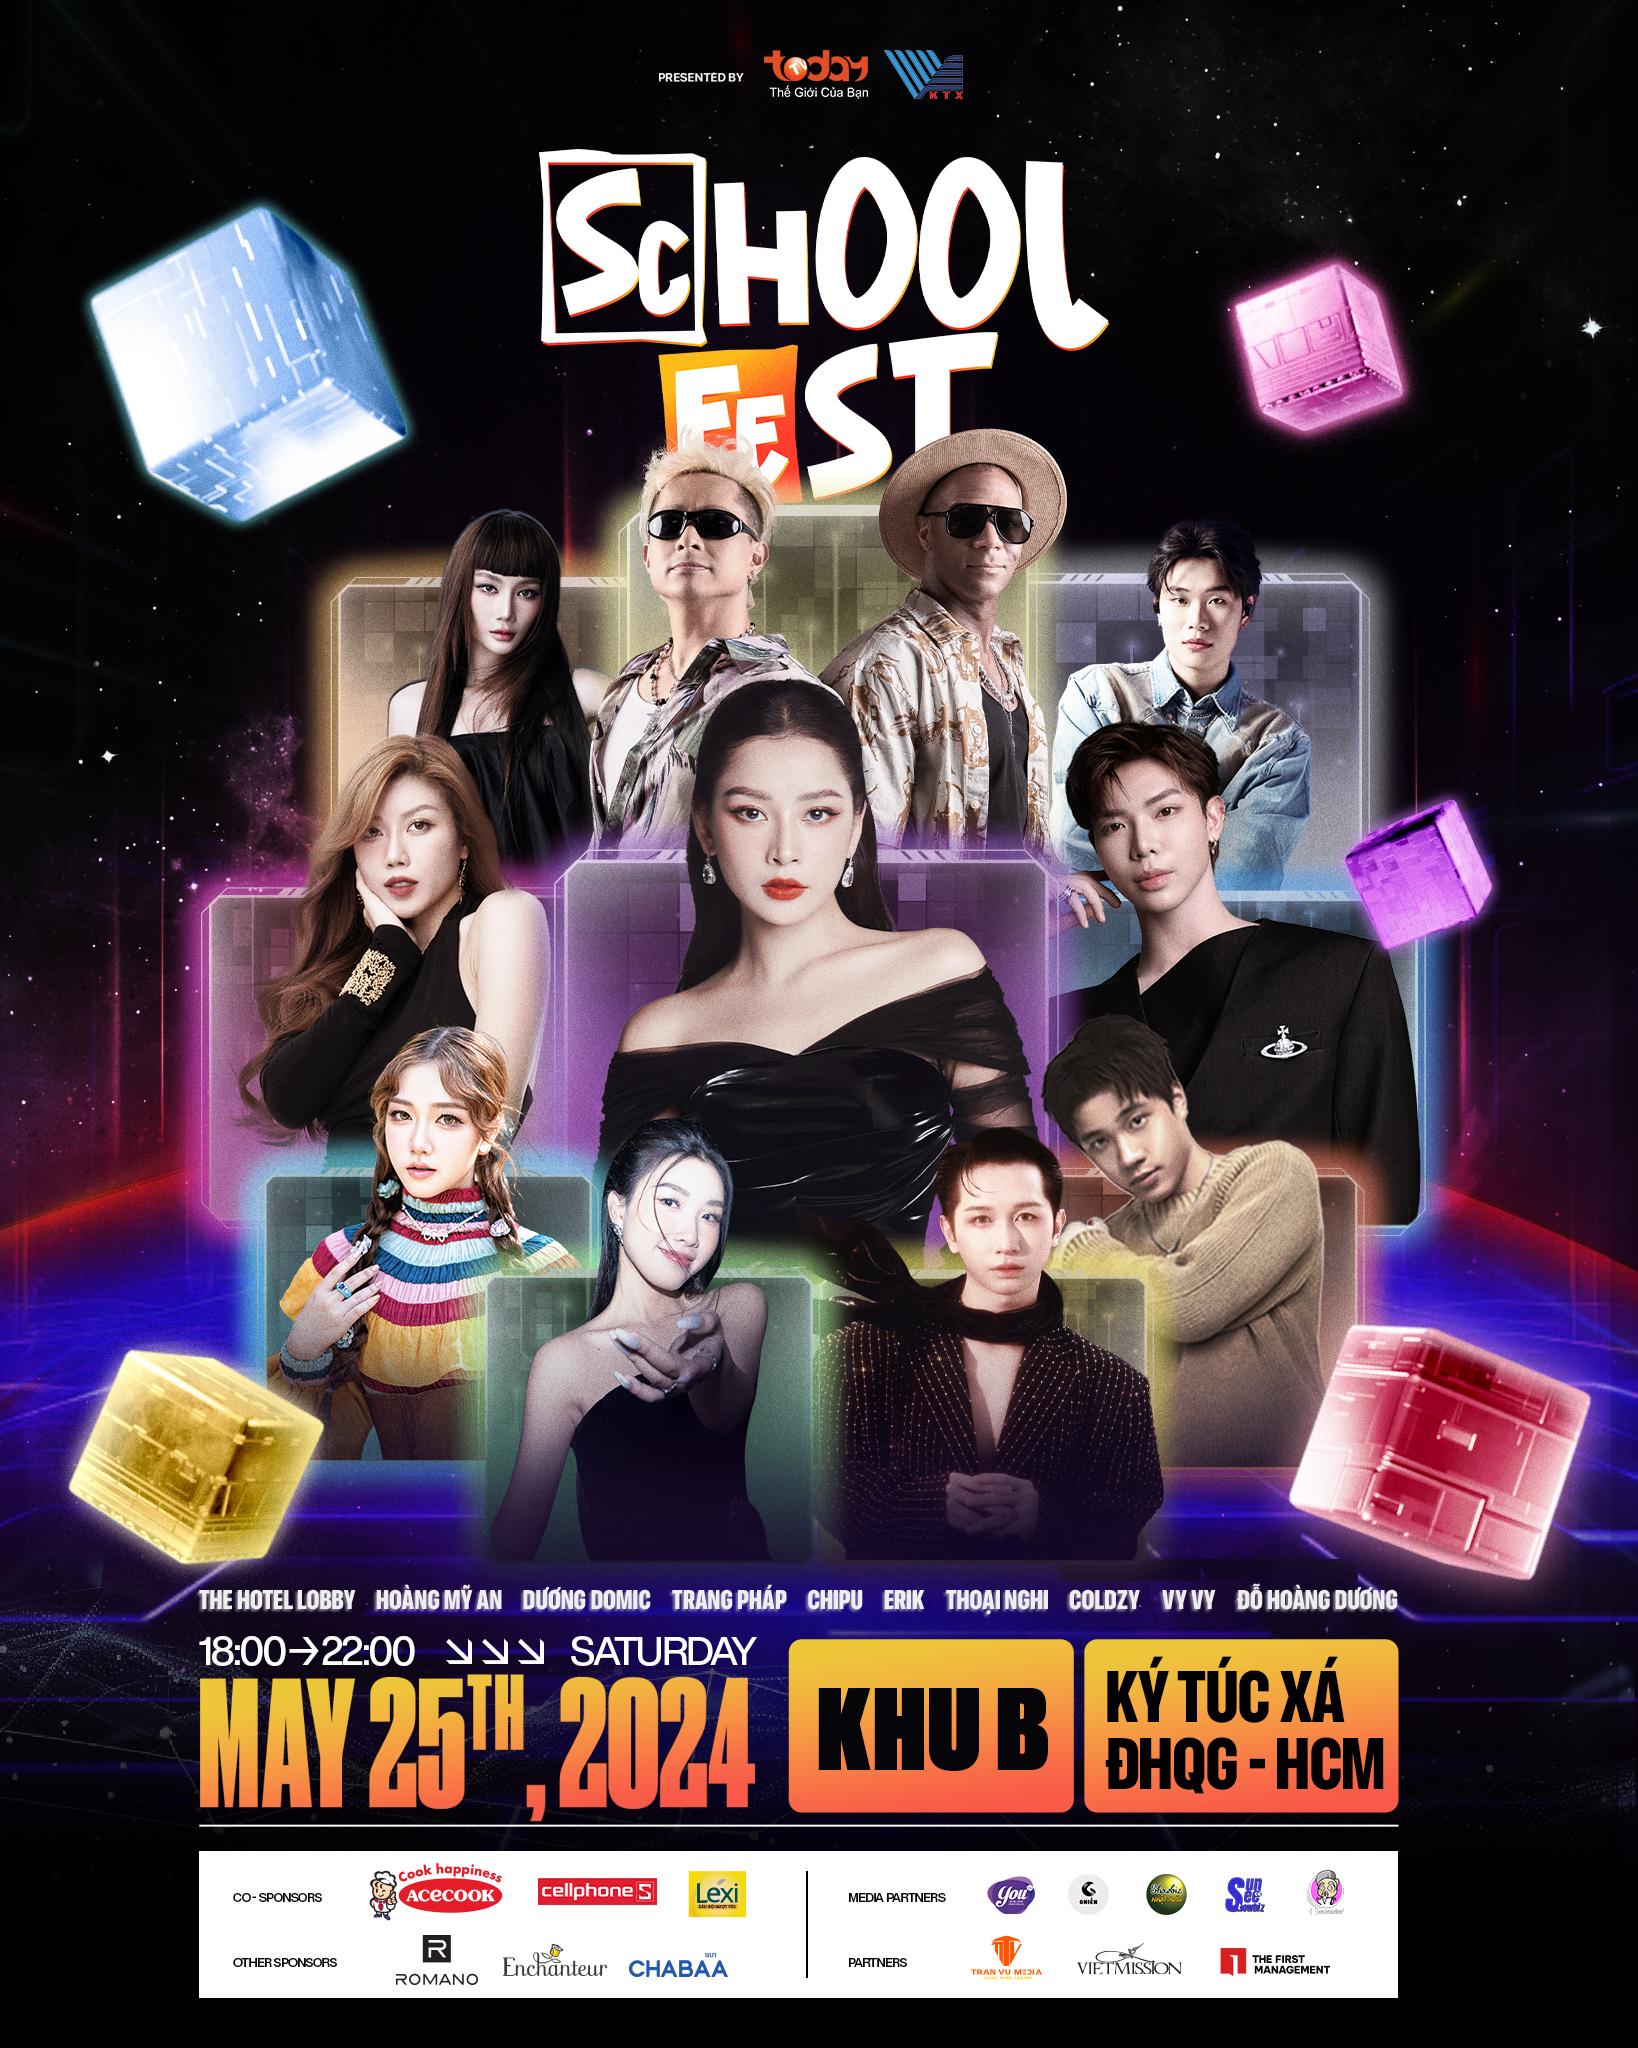 Điều gì đang chờ đợi khán giả Sài Thành tại lễ hội âm nhạc School Fest mùa 5?